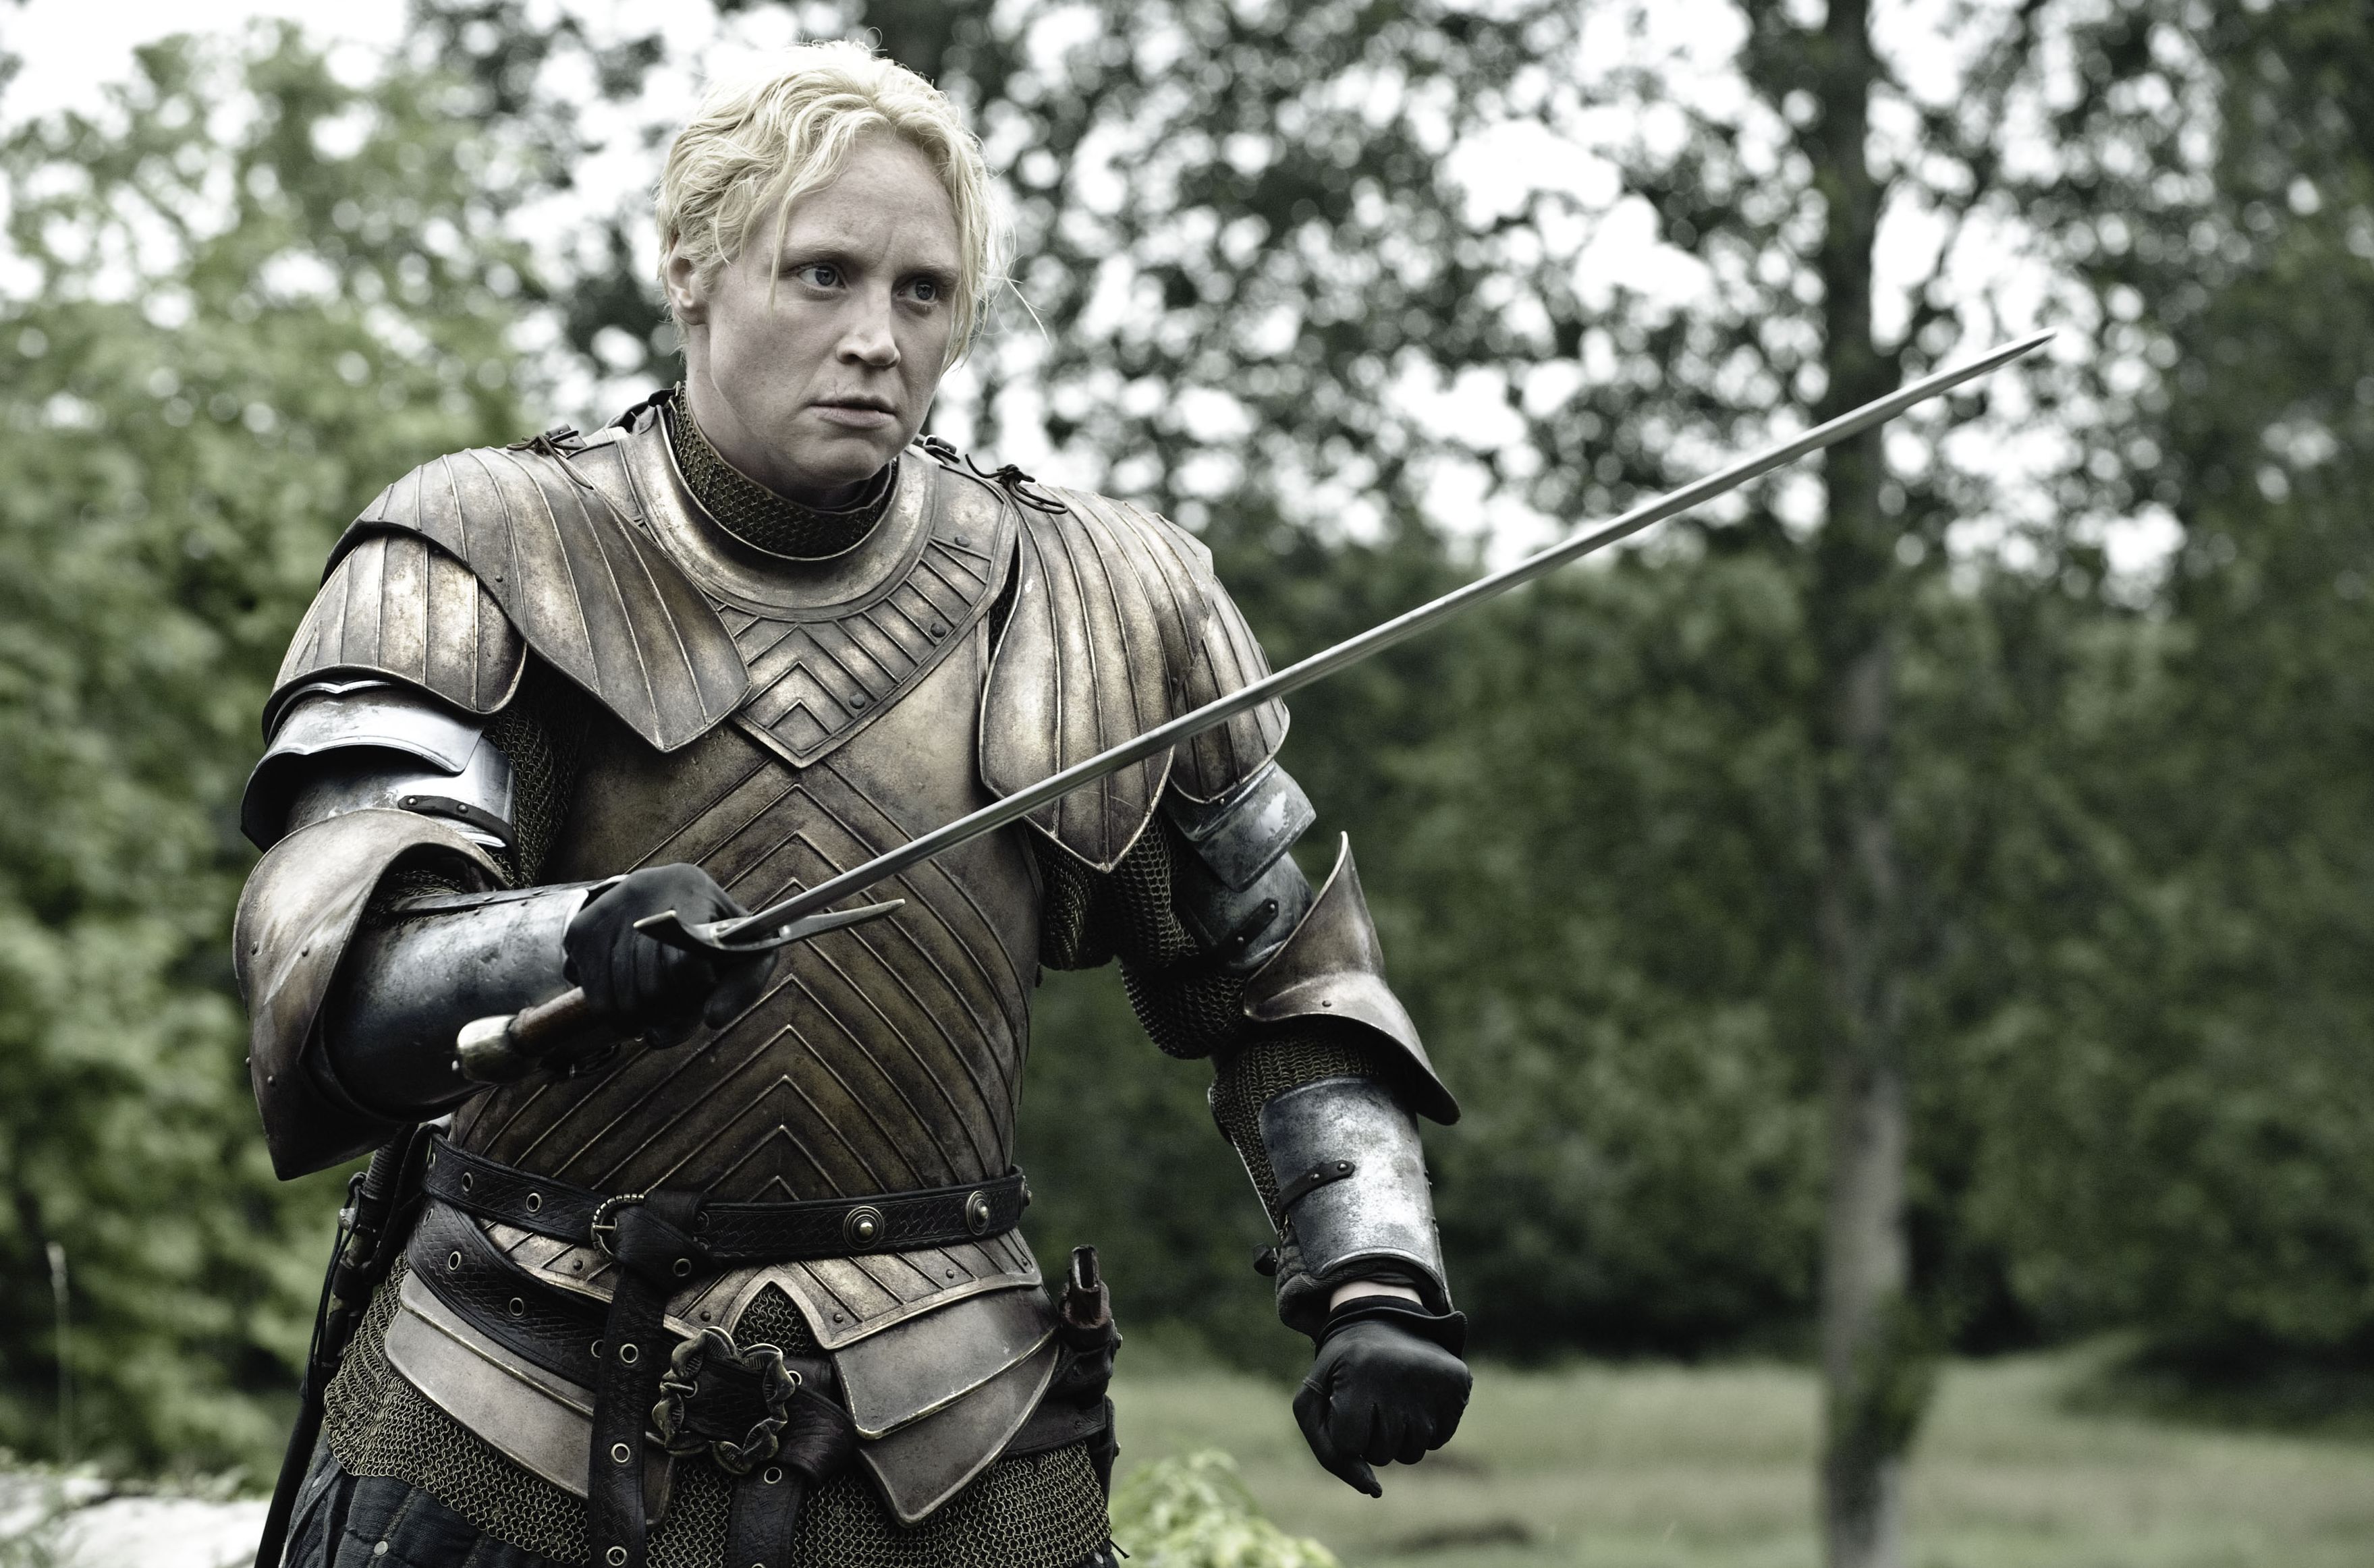 Brienne of Tarth, played by Gwendoline Christie